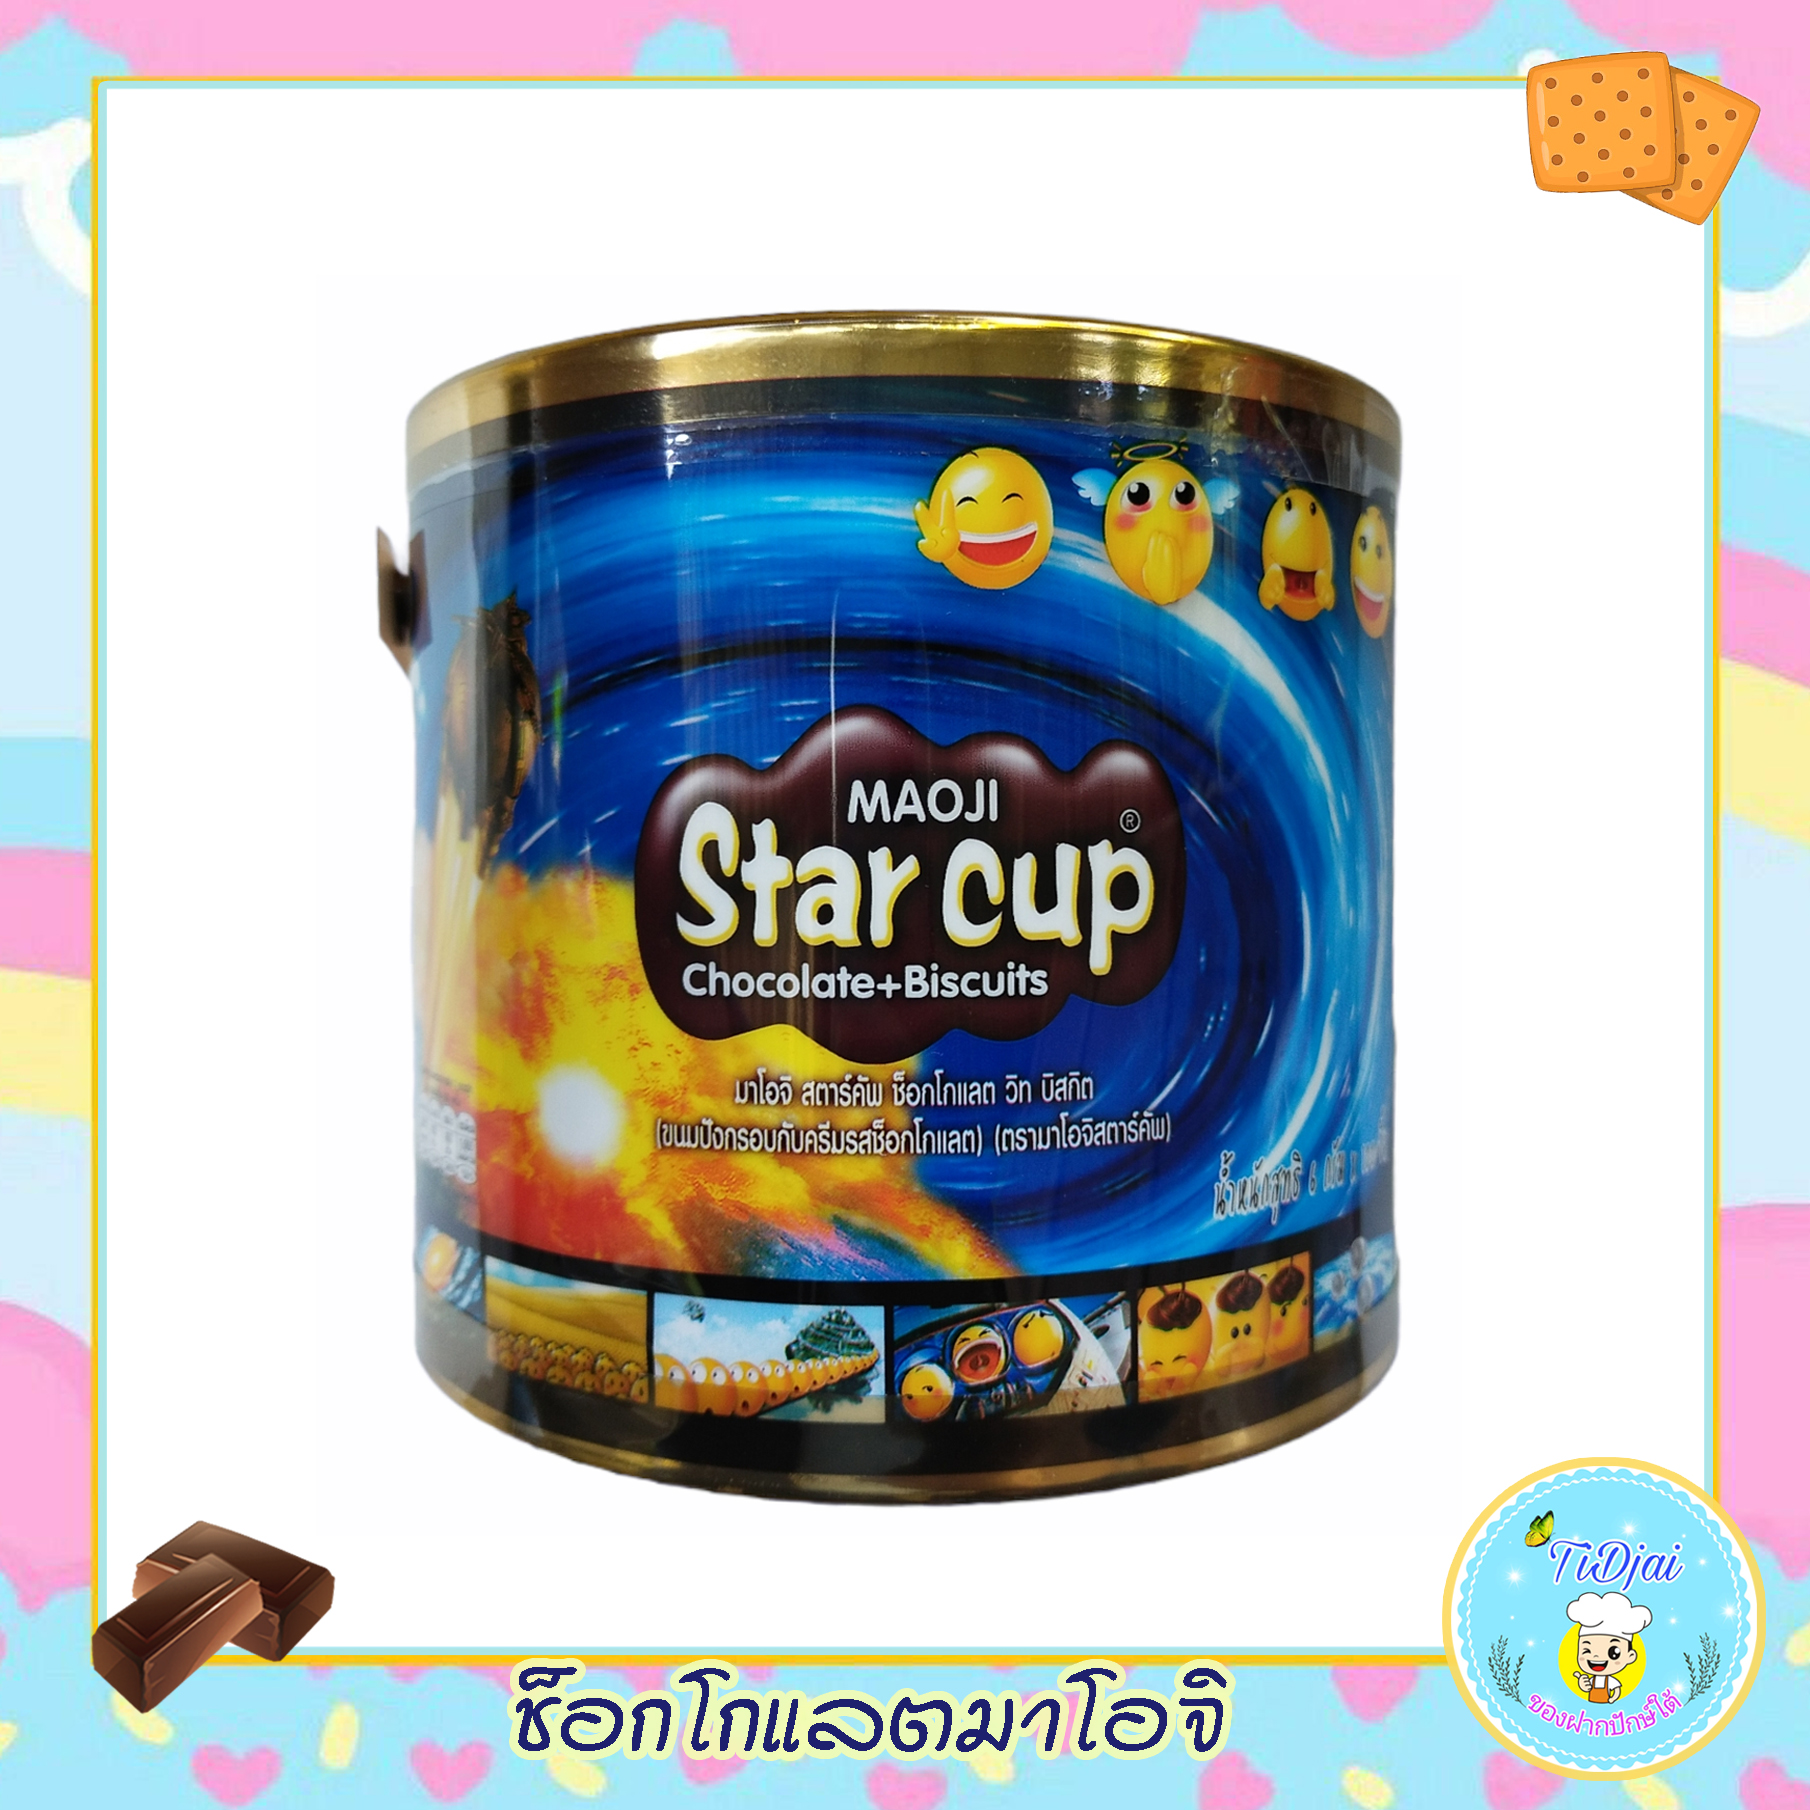 ช็อกโกแลต มาโอจิ ขนมปังกรอบกับครีมรสช็อกโกแลต ตรามาโอจิสตาร์คัฟ มาโอจิ สตาร์คัพ ช็อกโกแลต วิท บิสกิต Maoji Star cup Chocolate Biscuits